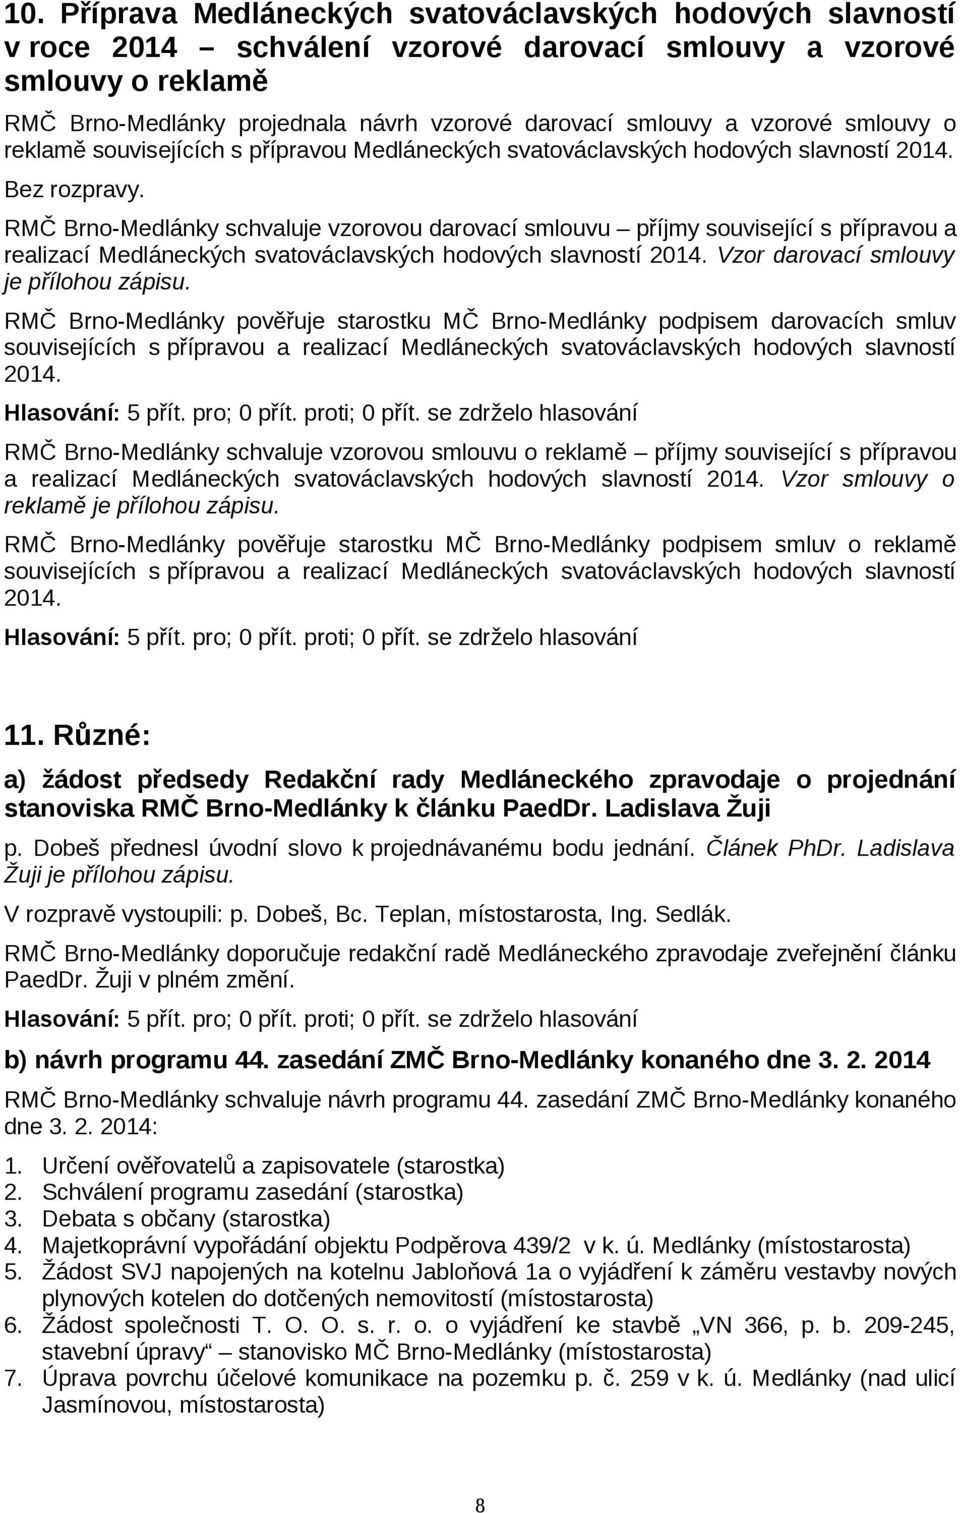 RMČ Brno-Medlánky schvaluje vzorovou darovací smlouvu příjmy související s přípravou a realizací Medláneckých svatováclavských hodových slavností 2014. Vzor darovací smlouvy je přílohou zápisu.